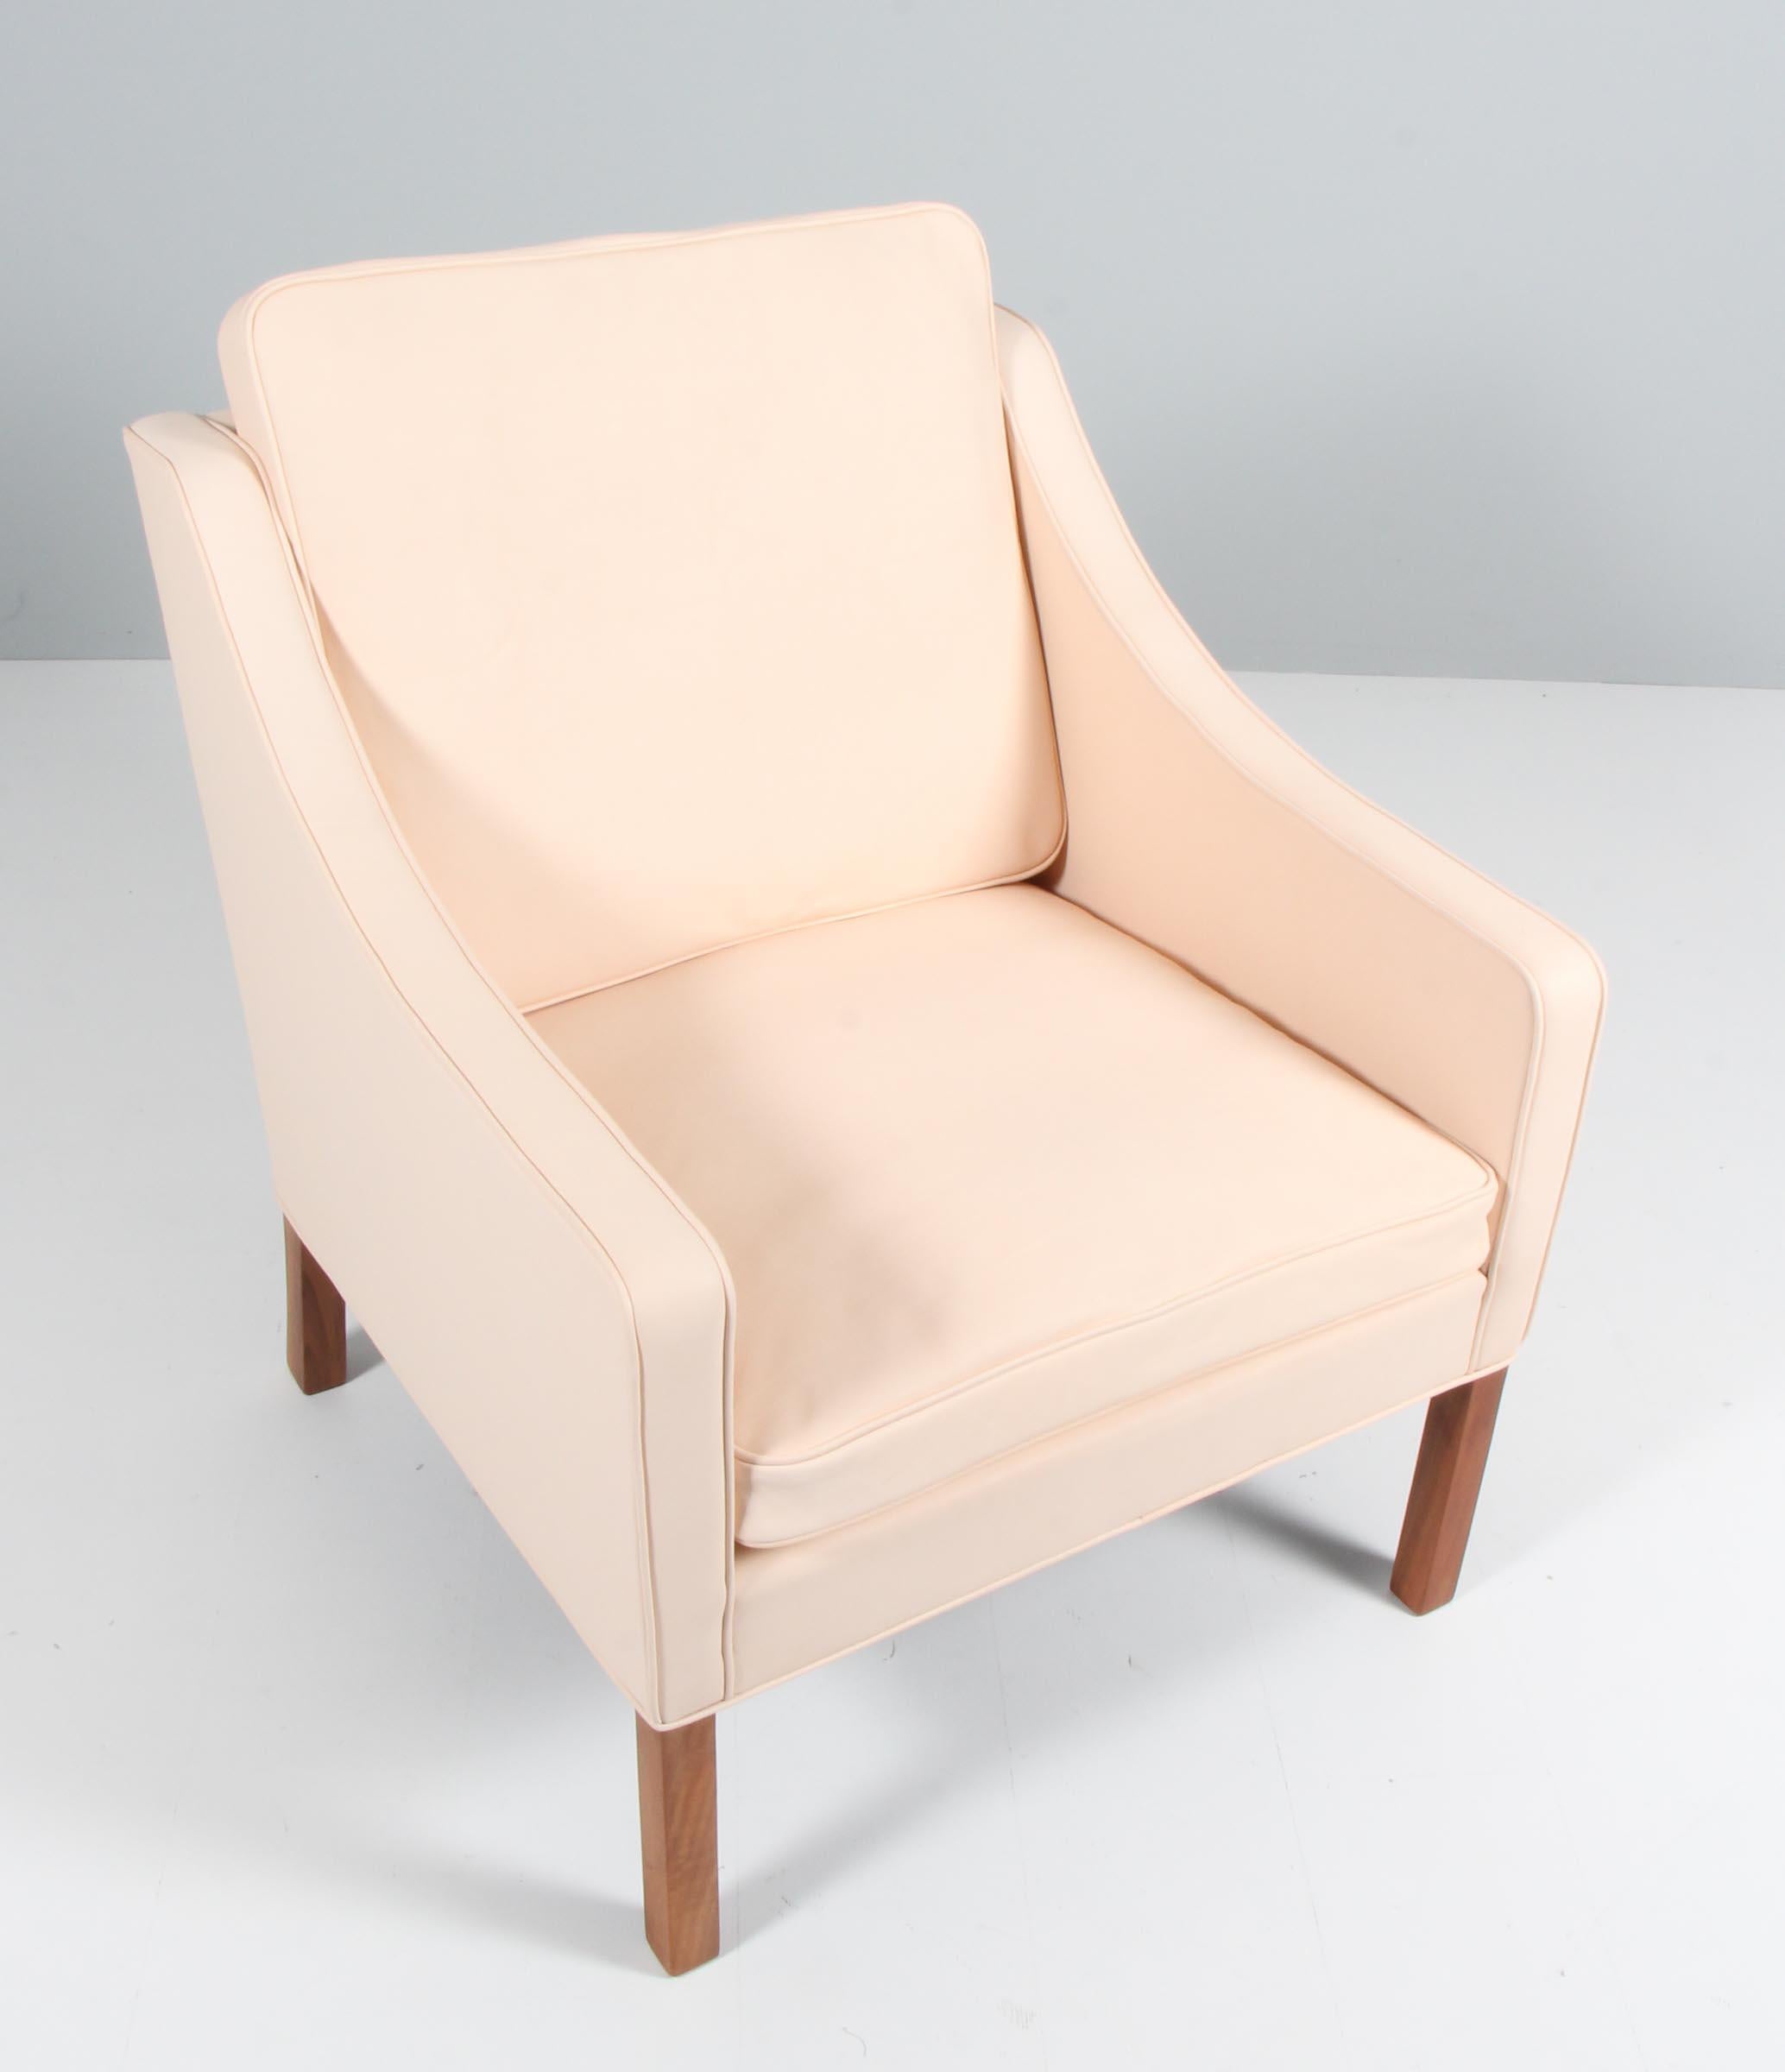 Børge Mogensen Sessel neu gepolstert mit Nature Leder Anilin Leder.

Beine aus Teakholz.

Modell 2207, hergestellt von Fredericia furniture.